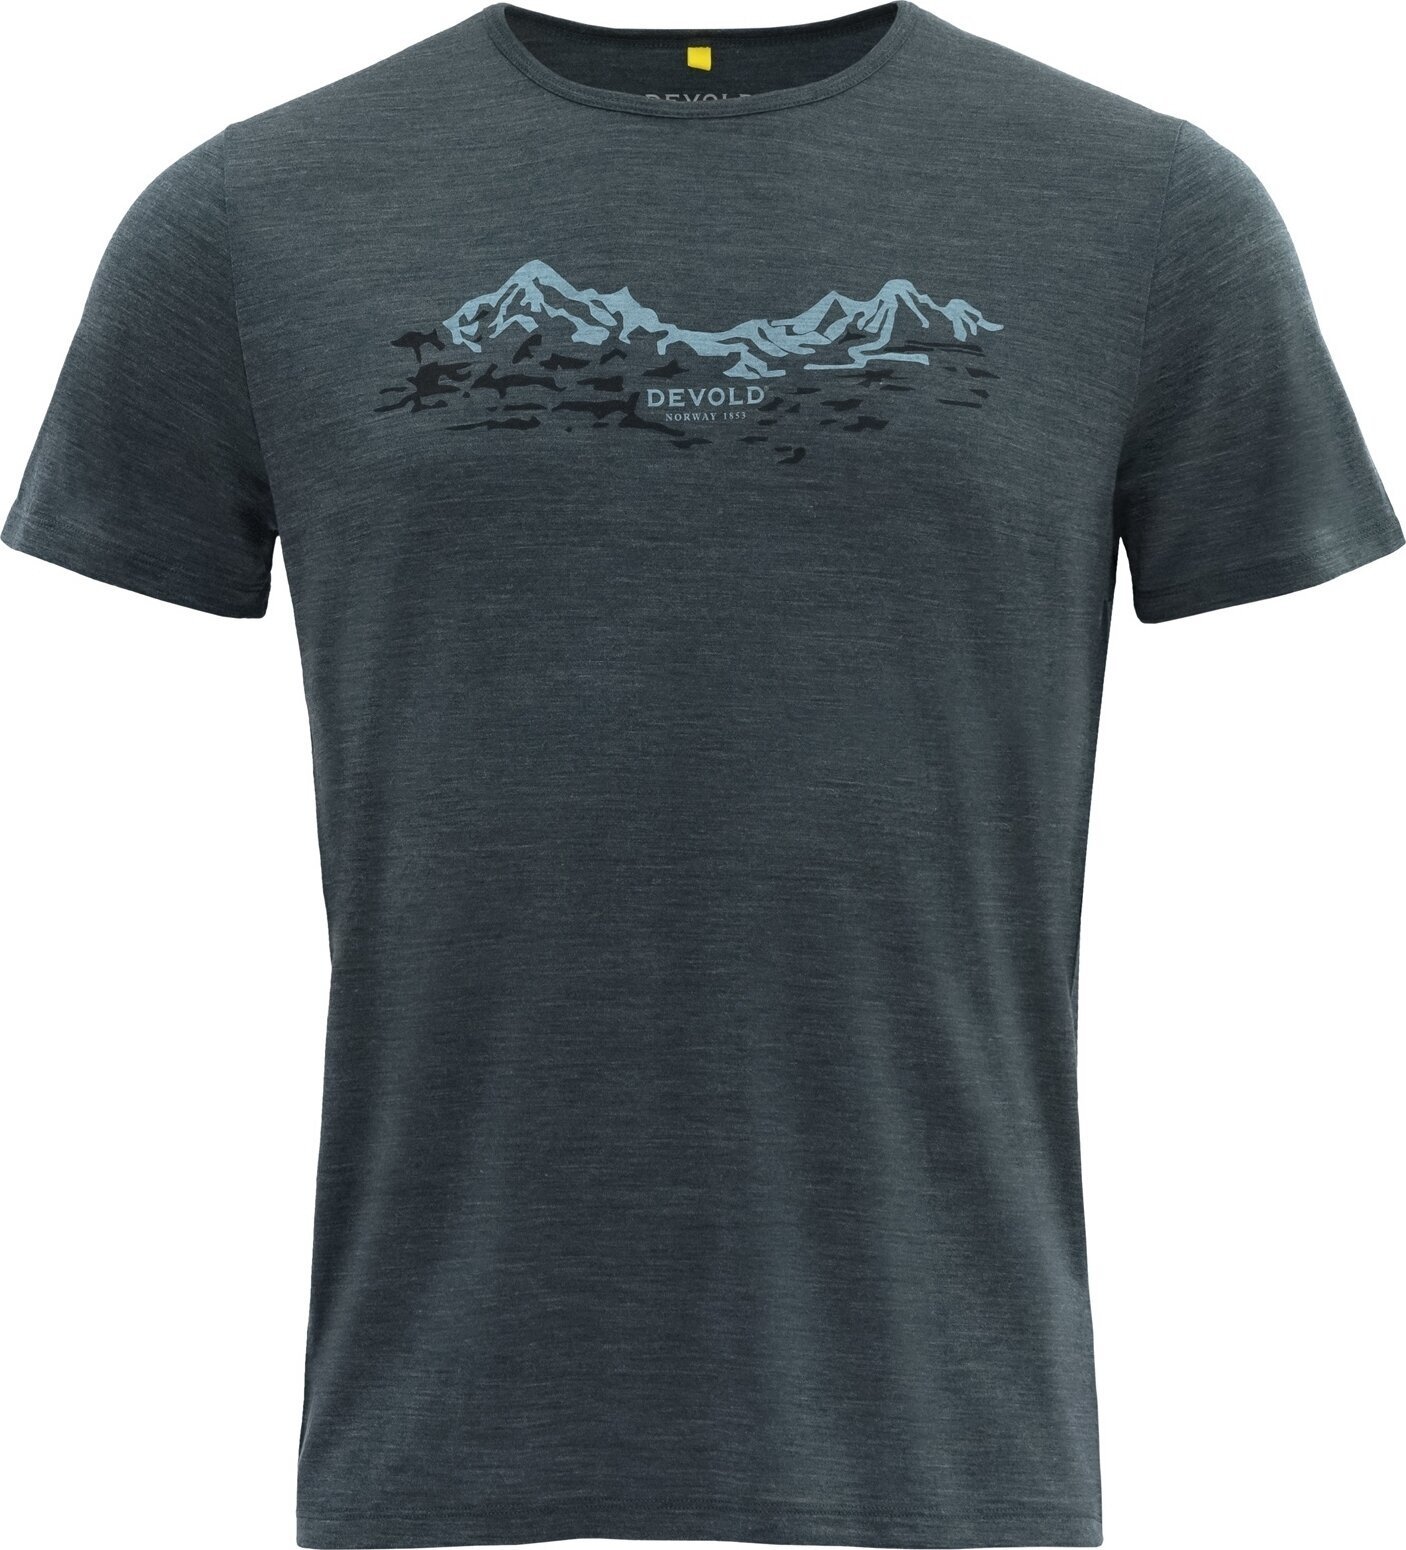 Outdoor T-Shirt Devold Utladalen Merino 130 Tee Man Woods S T-Shirt